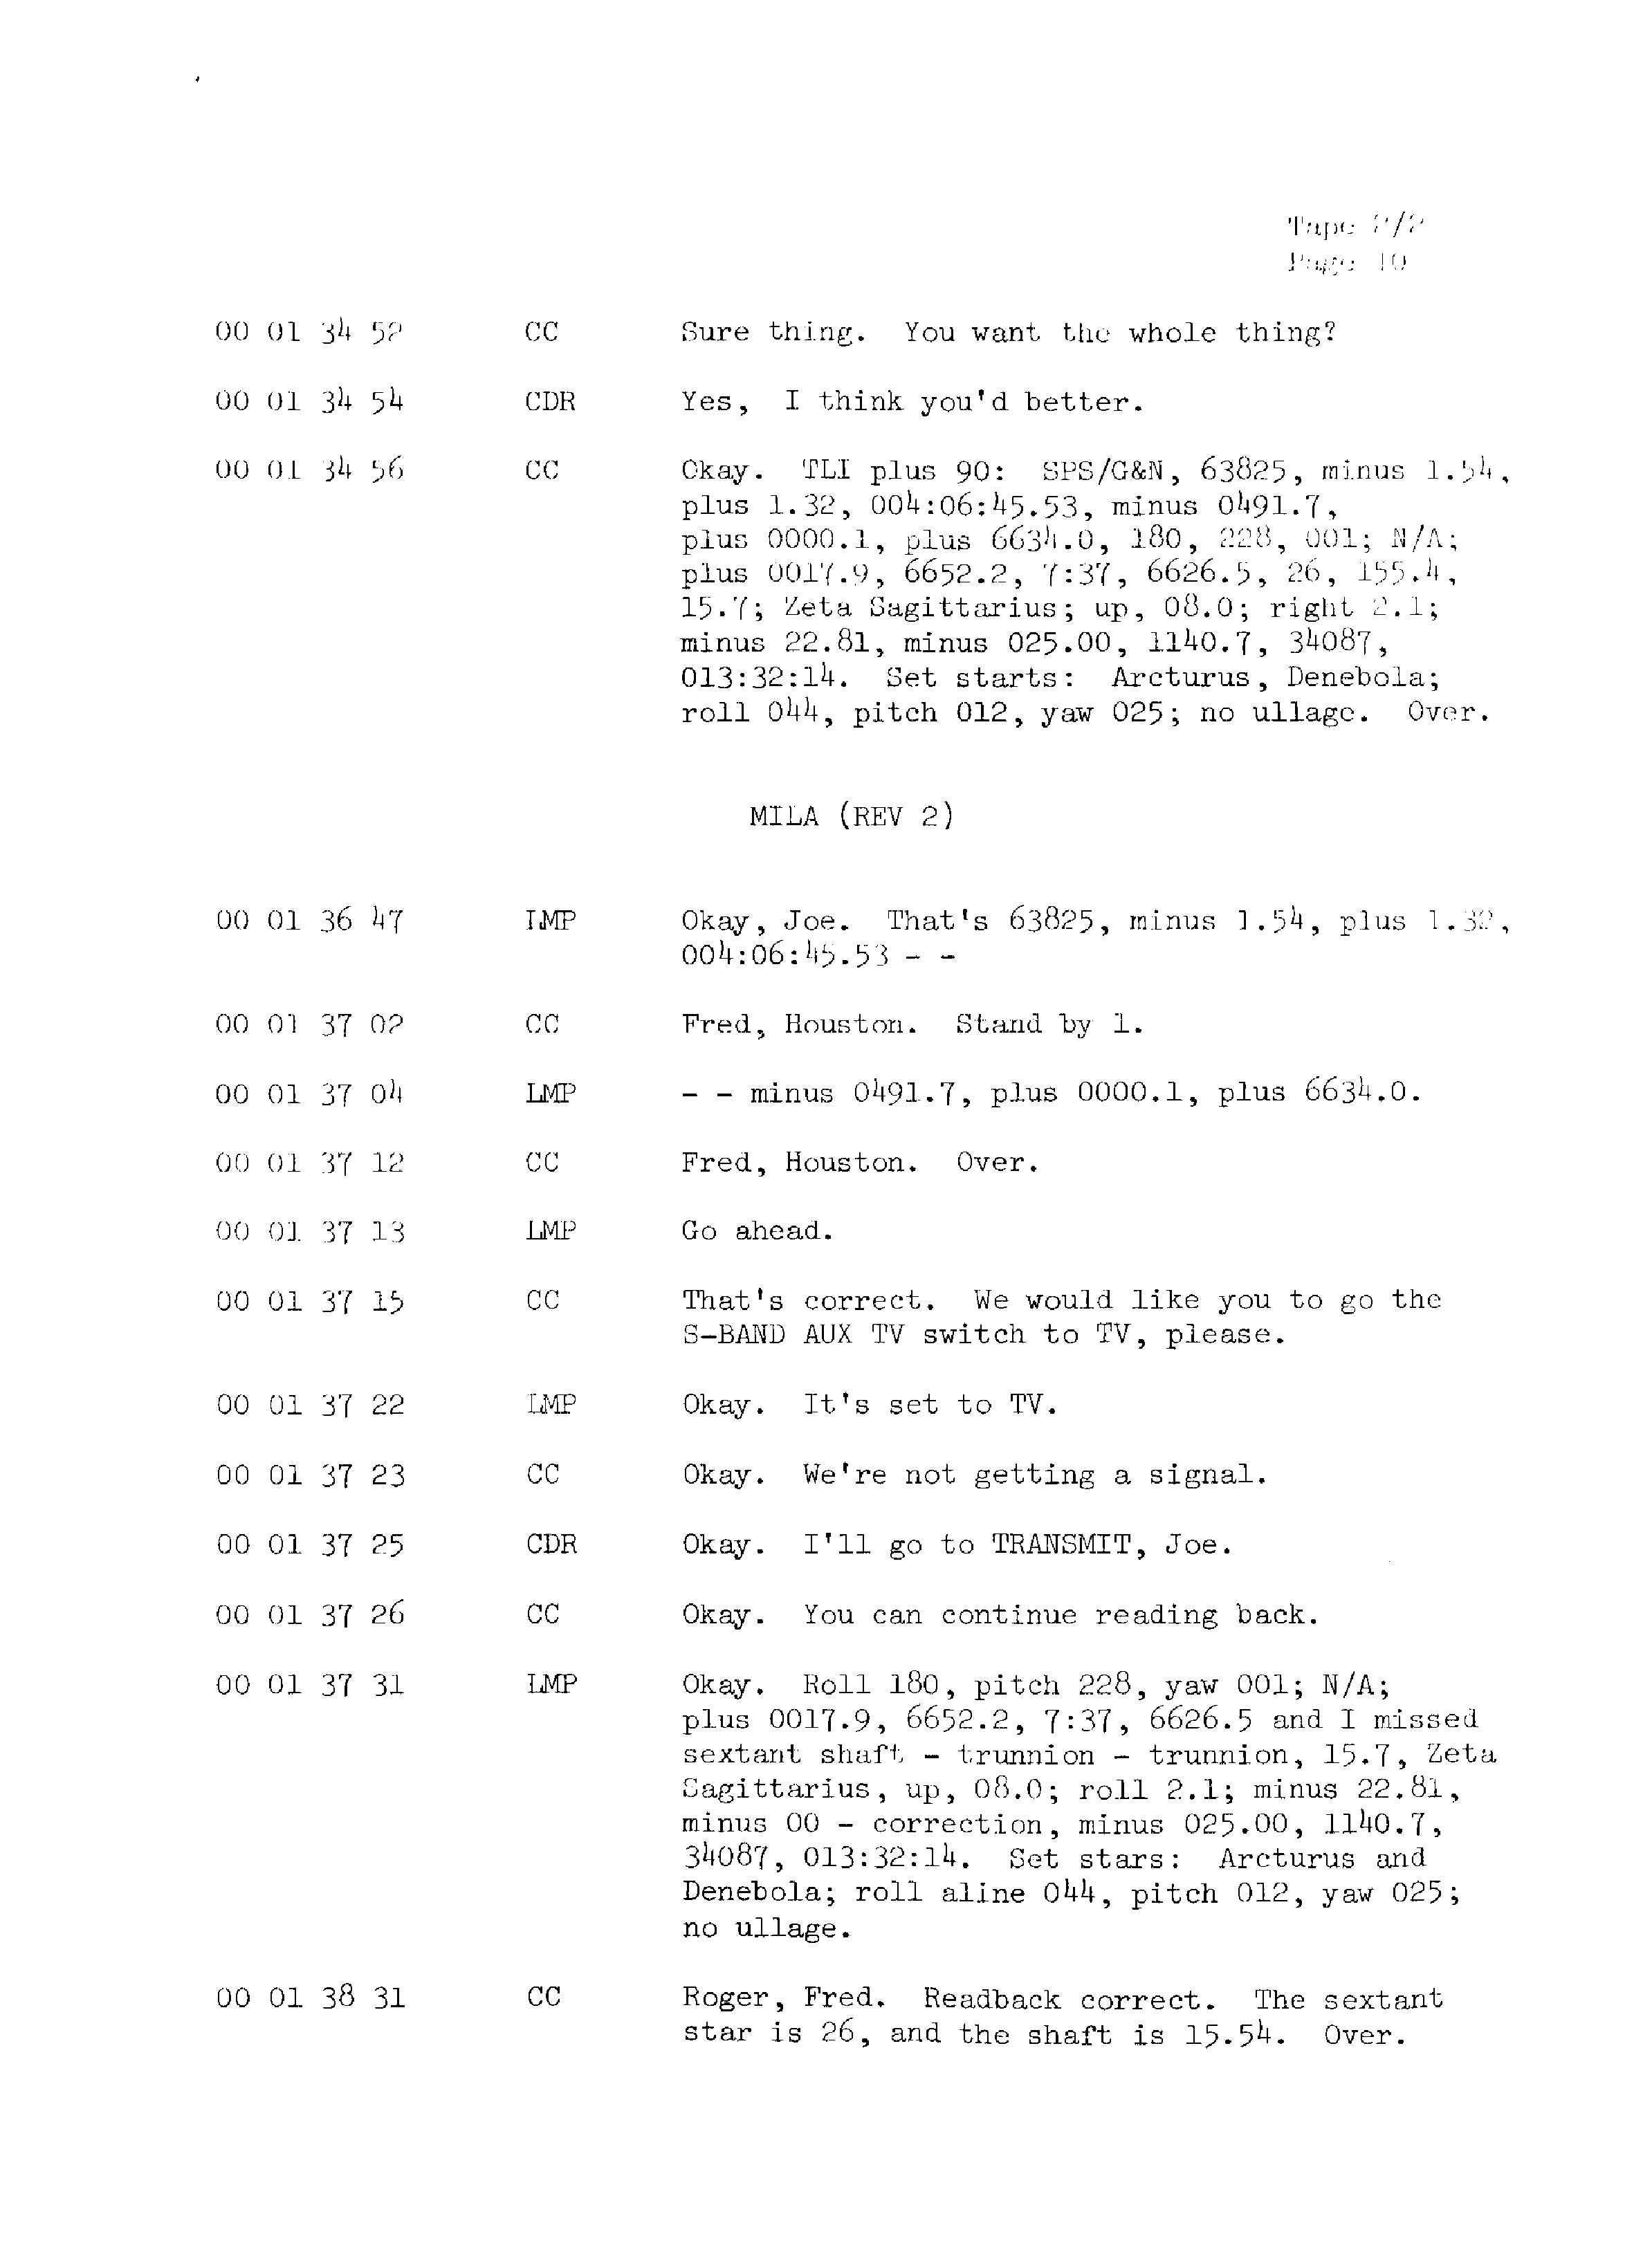 Page 17 of Apollo 13’s original transcript